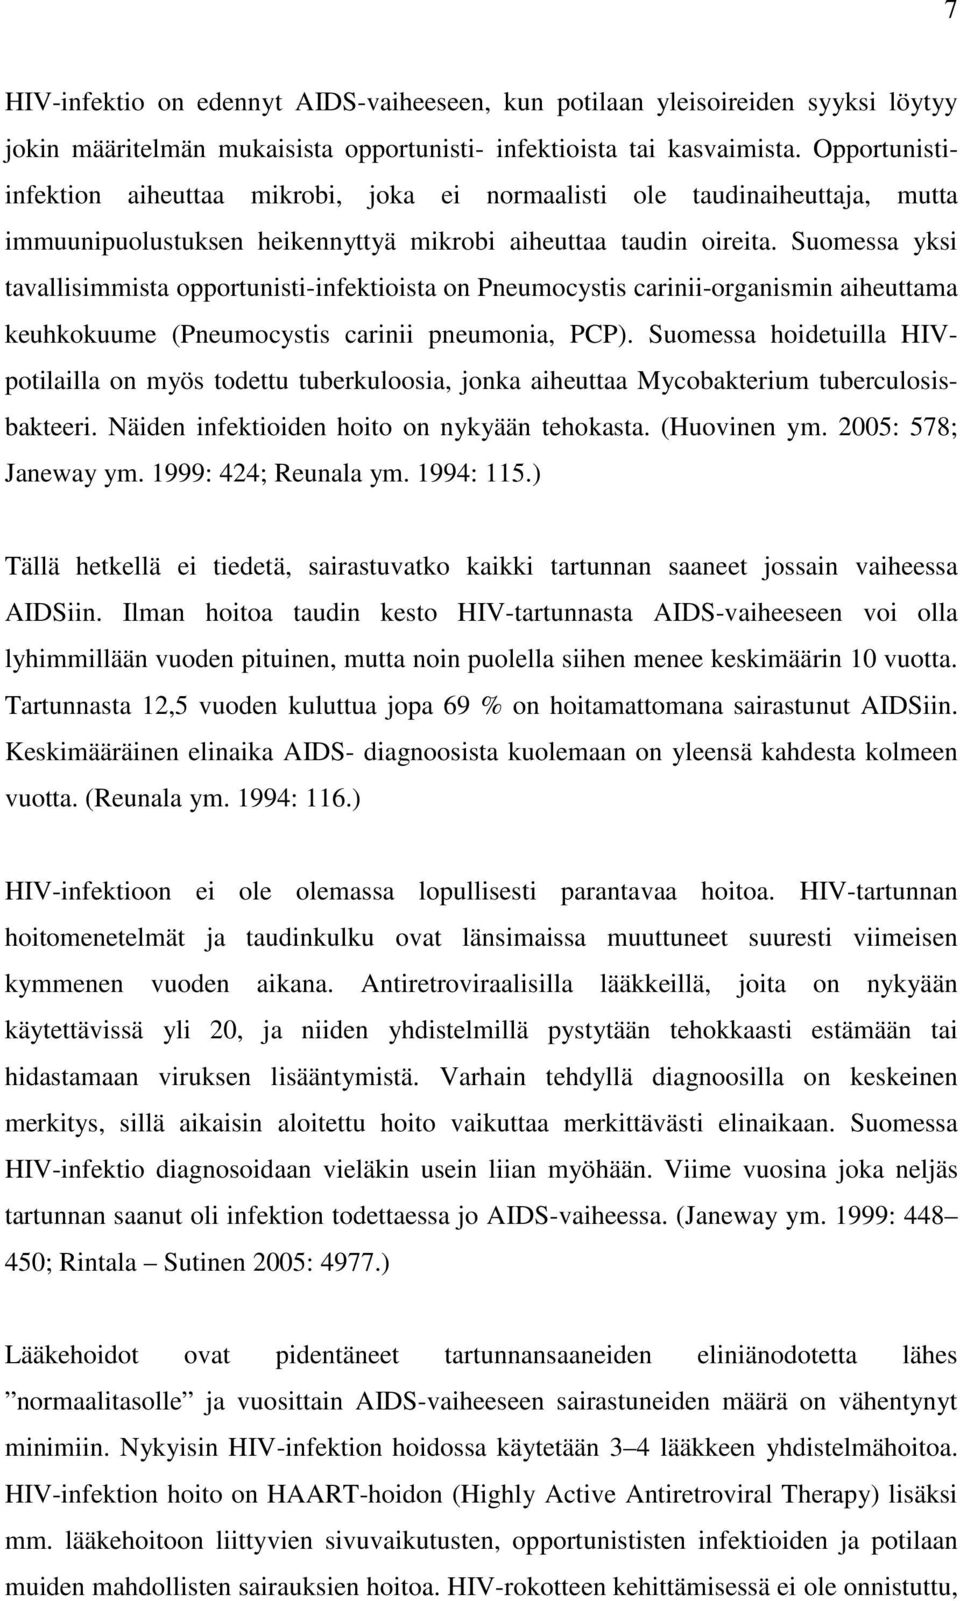 Suomessa yksi tavallisimmista opportunisti-infektioista on Pneumocystis carinii-organismin aiheuttama keuhkokuume (Pneumocystis carinii pneumonia, PCP).